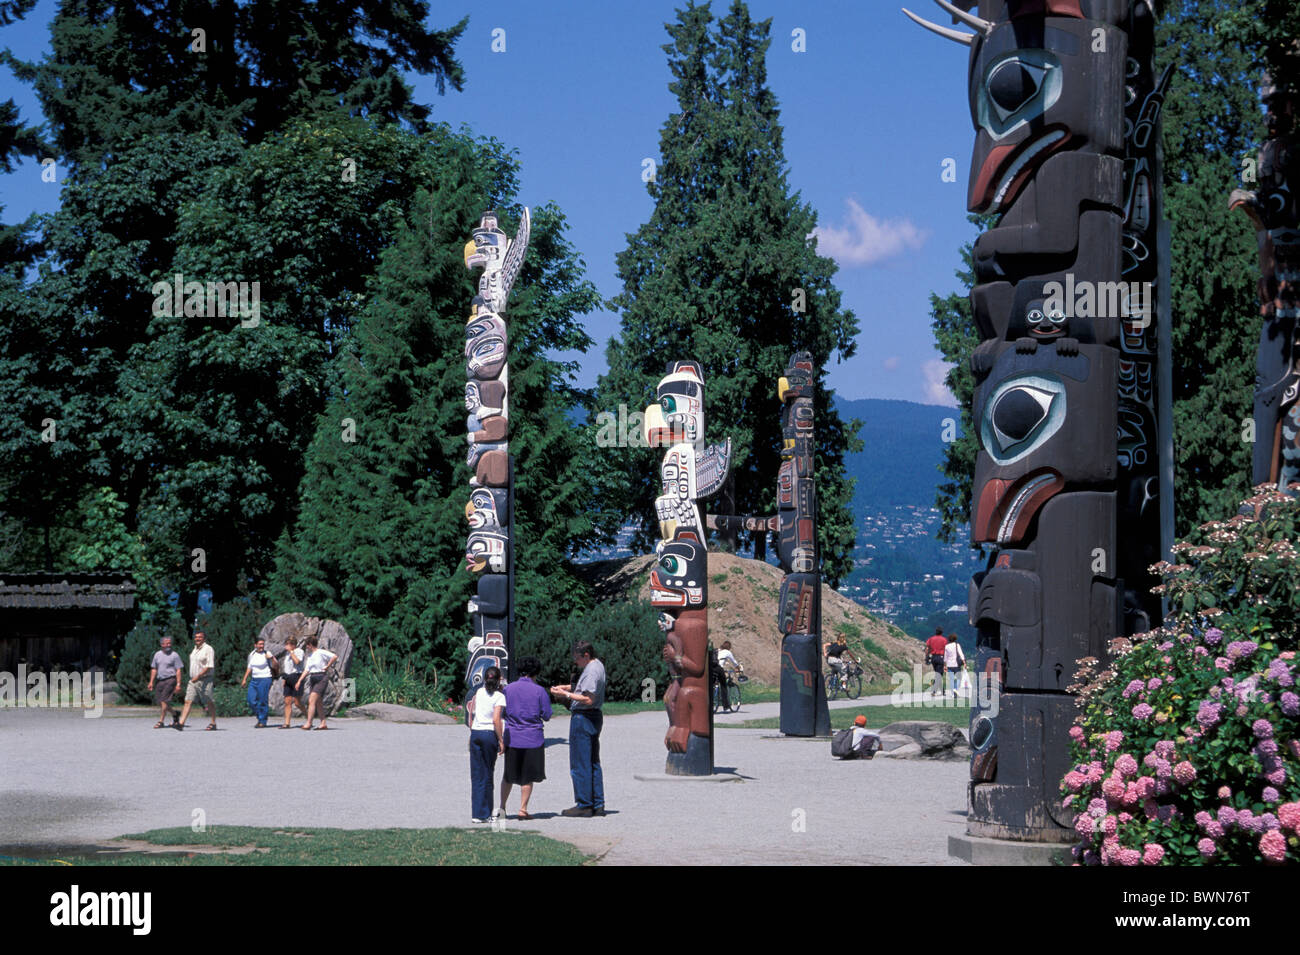 América América del Norte Canadá Tótem Stanley Park Vancouver, British Columbia, los nativos americanos indígenas p Foto de stock